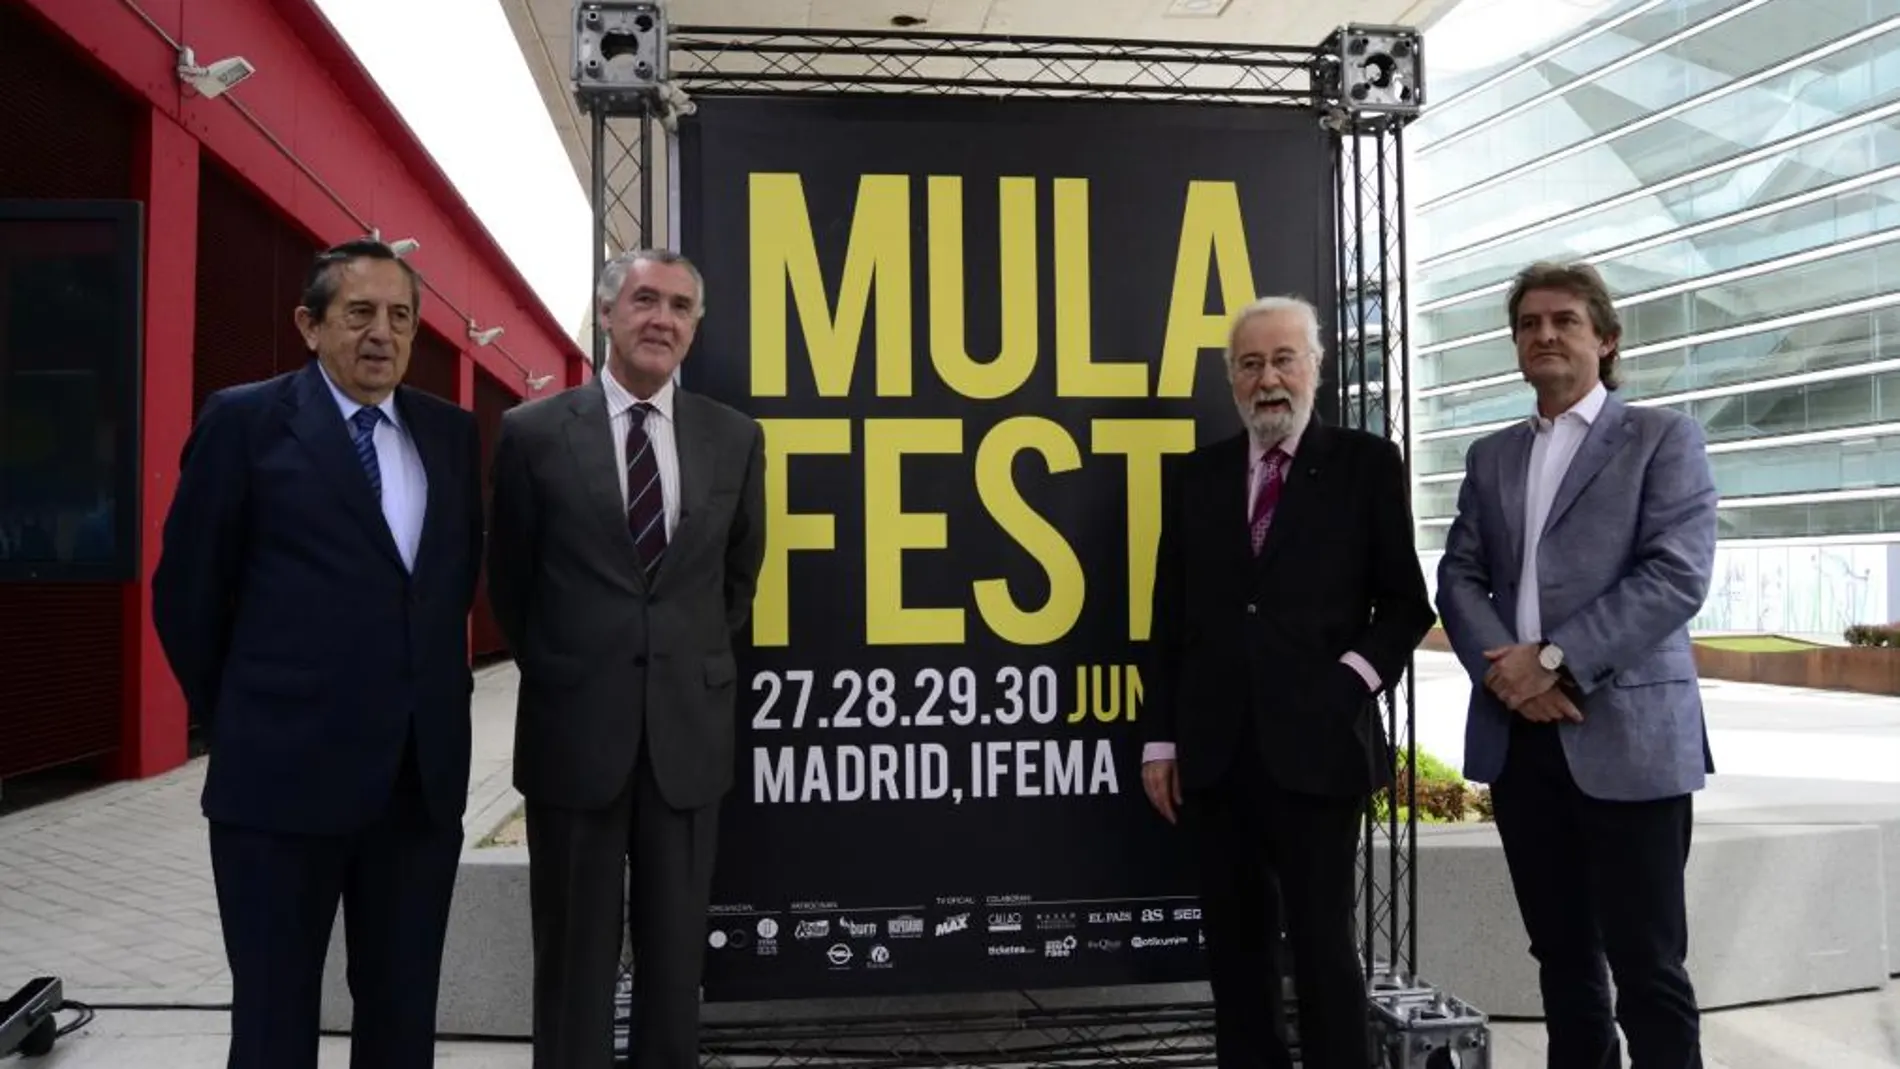 Presentación del festival Mulafest del año pasado.